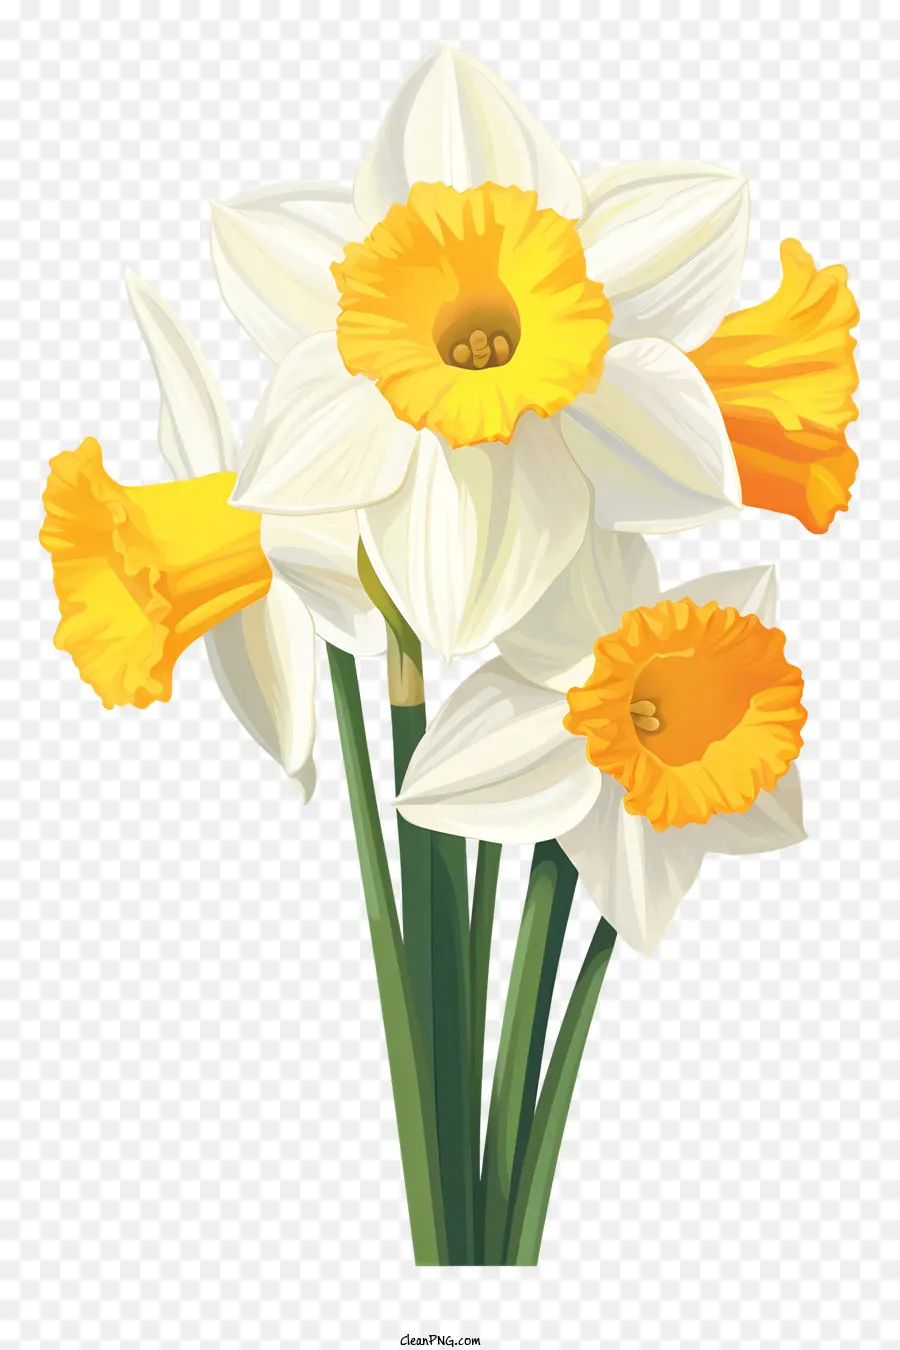 fiori di primavera - Narcisi bianchi con centri gialli in vaso